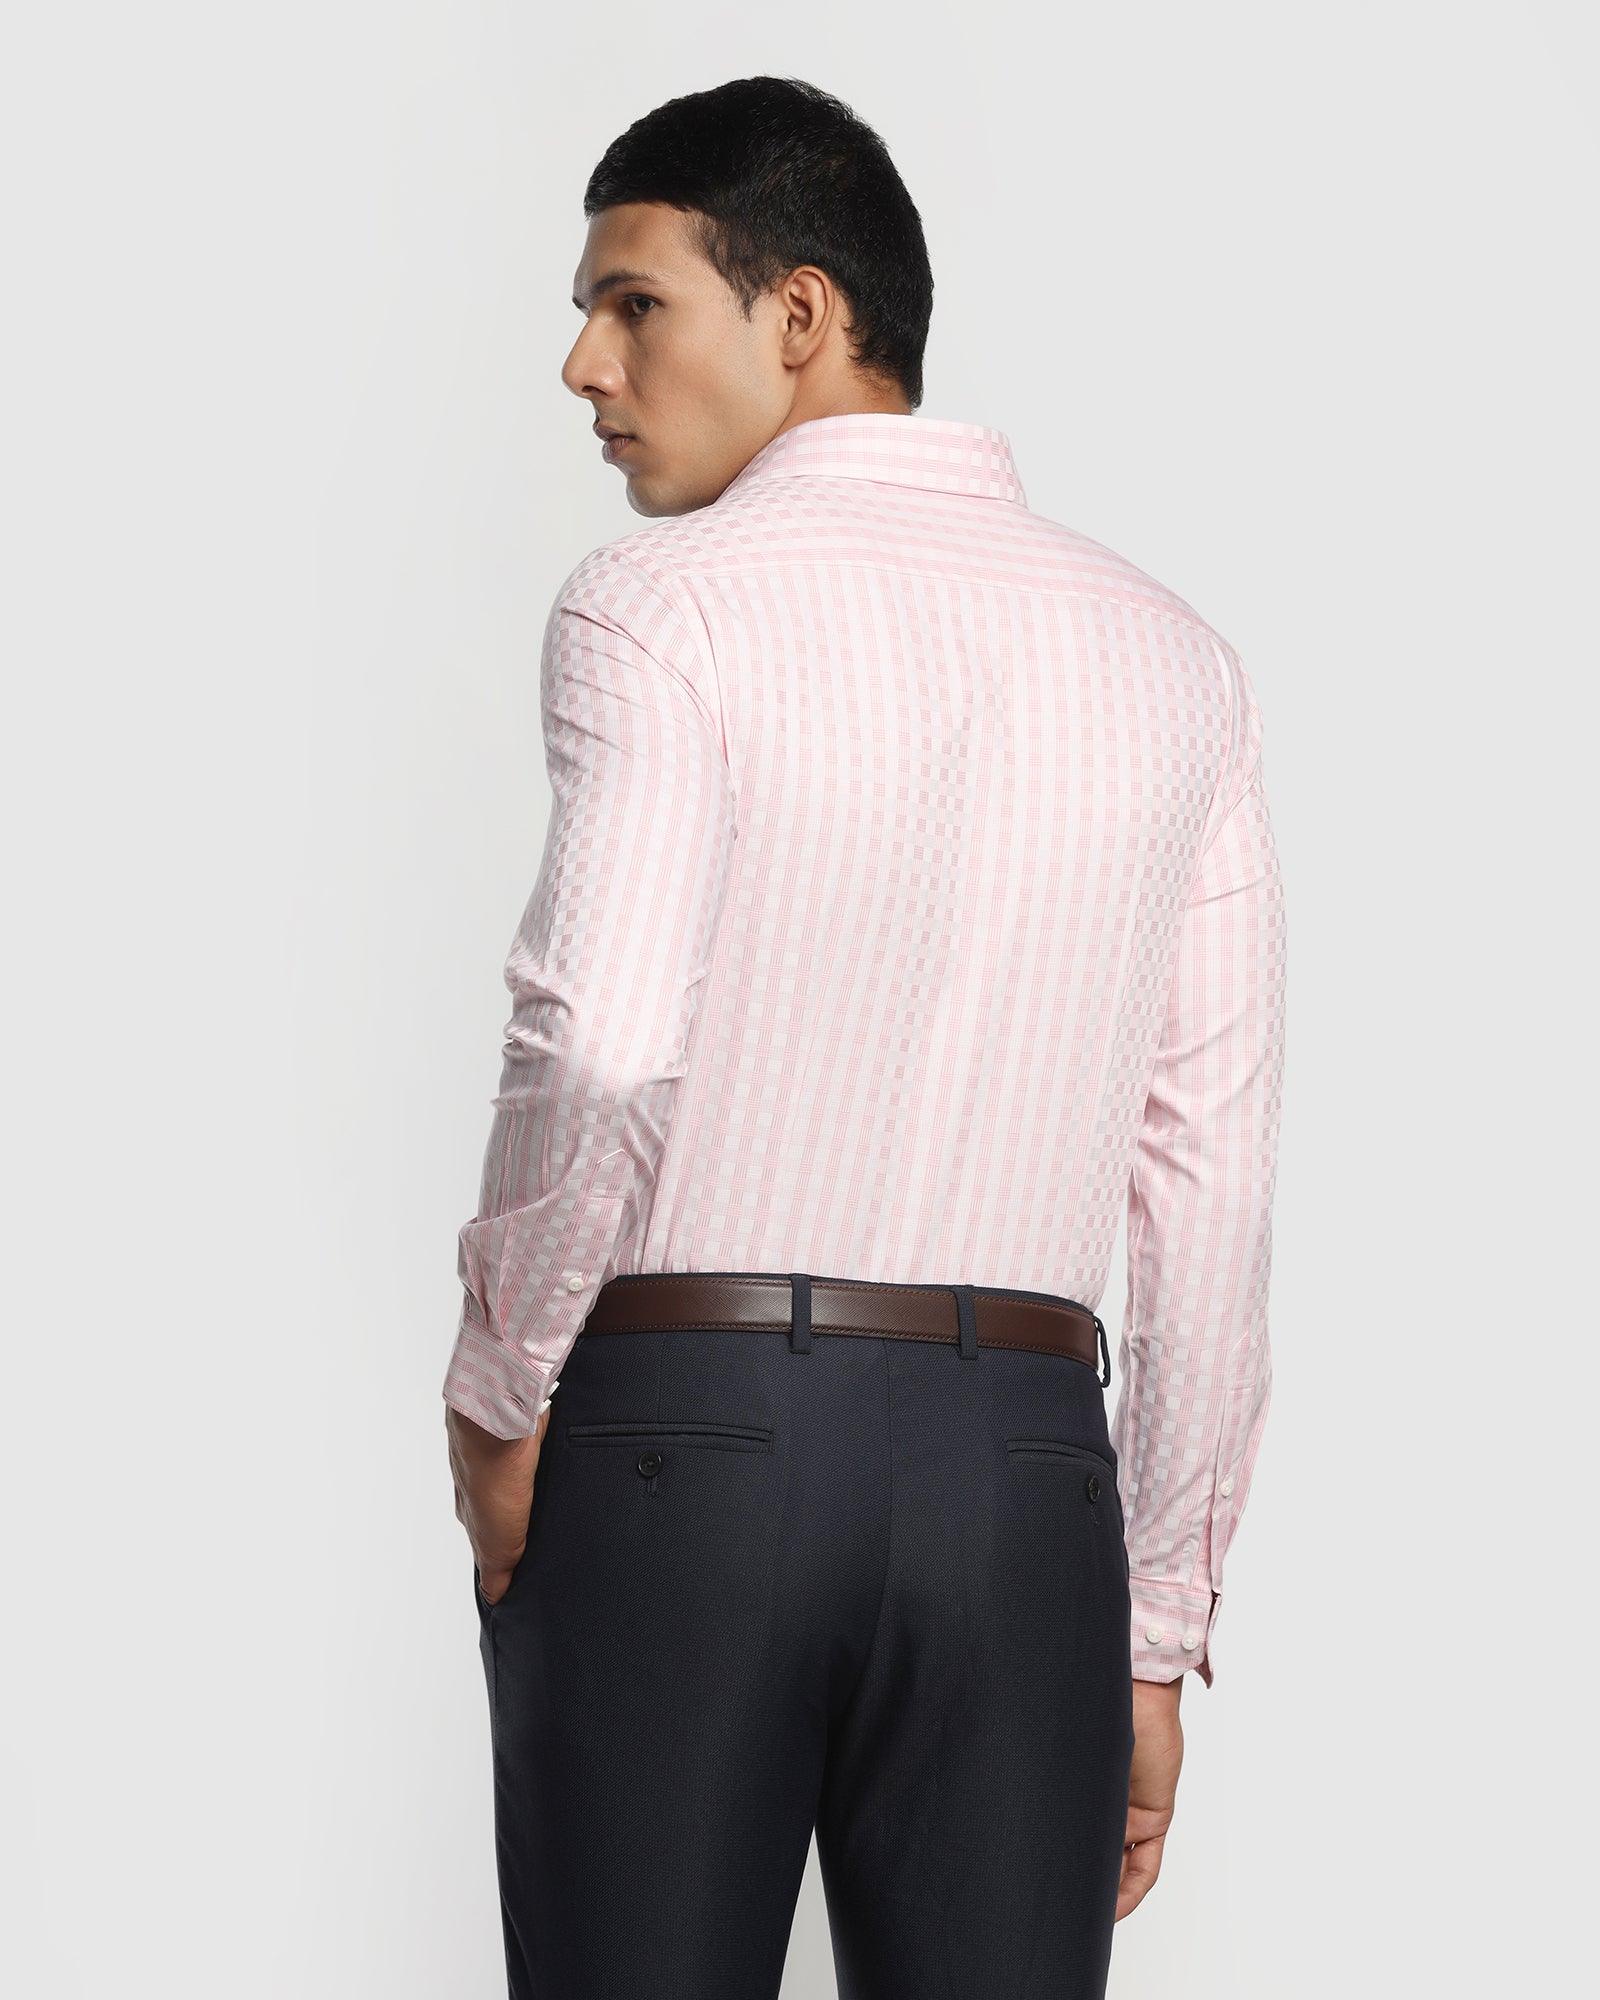 Formal Pink Check Shirt - Abay